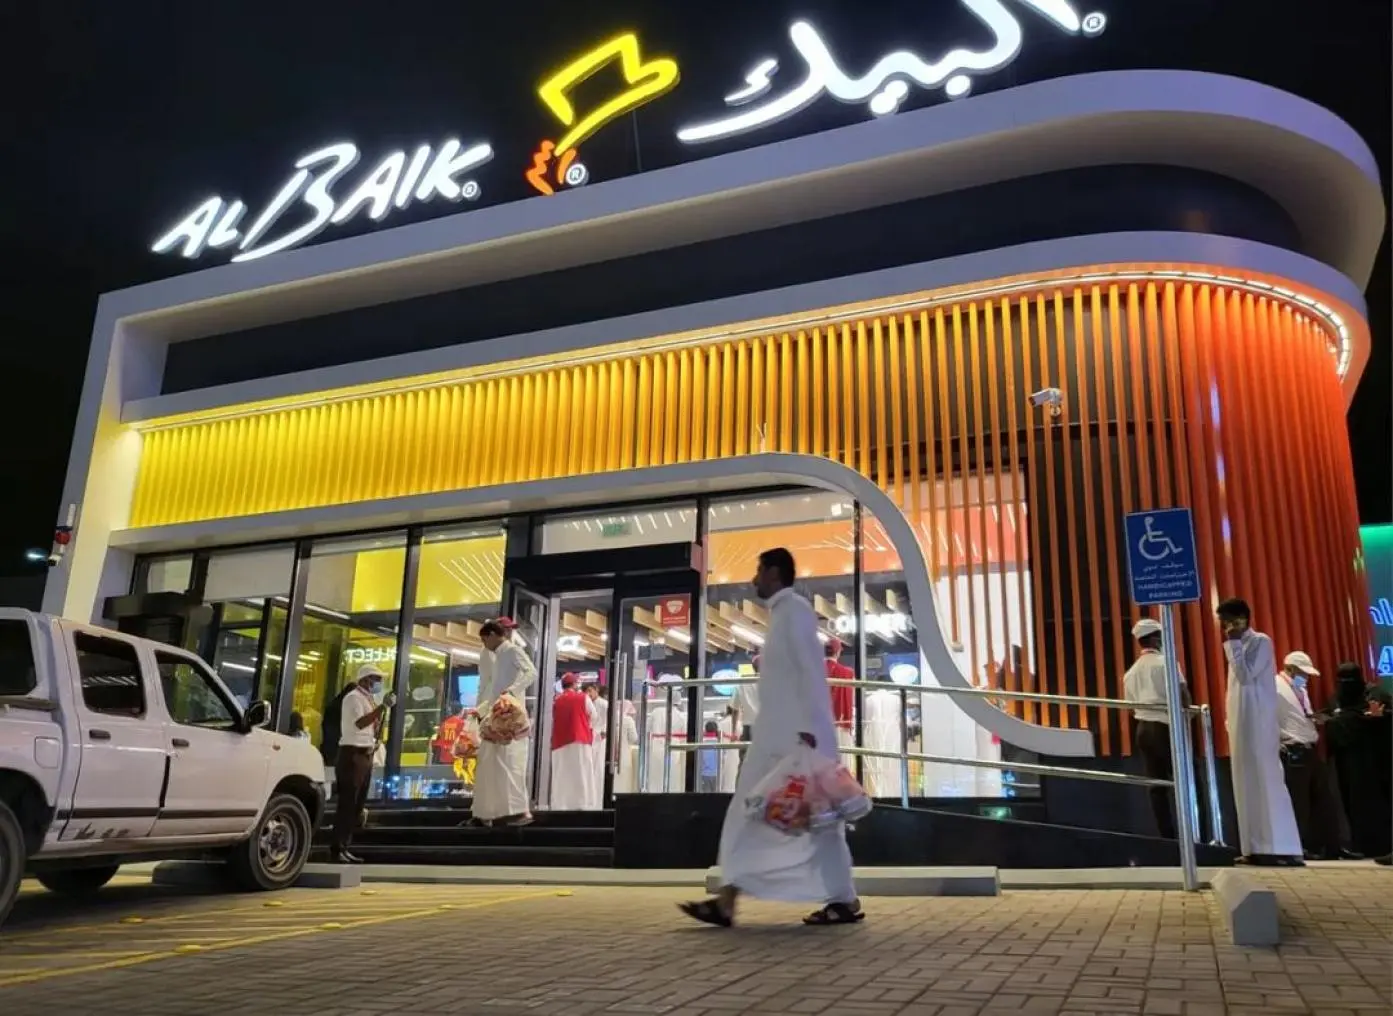 مطعم البيك: قصة نجاح سعودية في عالم المأكولات السريعة في المملكة العربية السعودية 